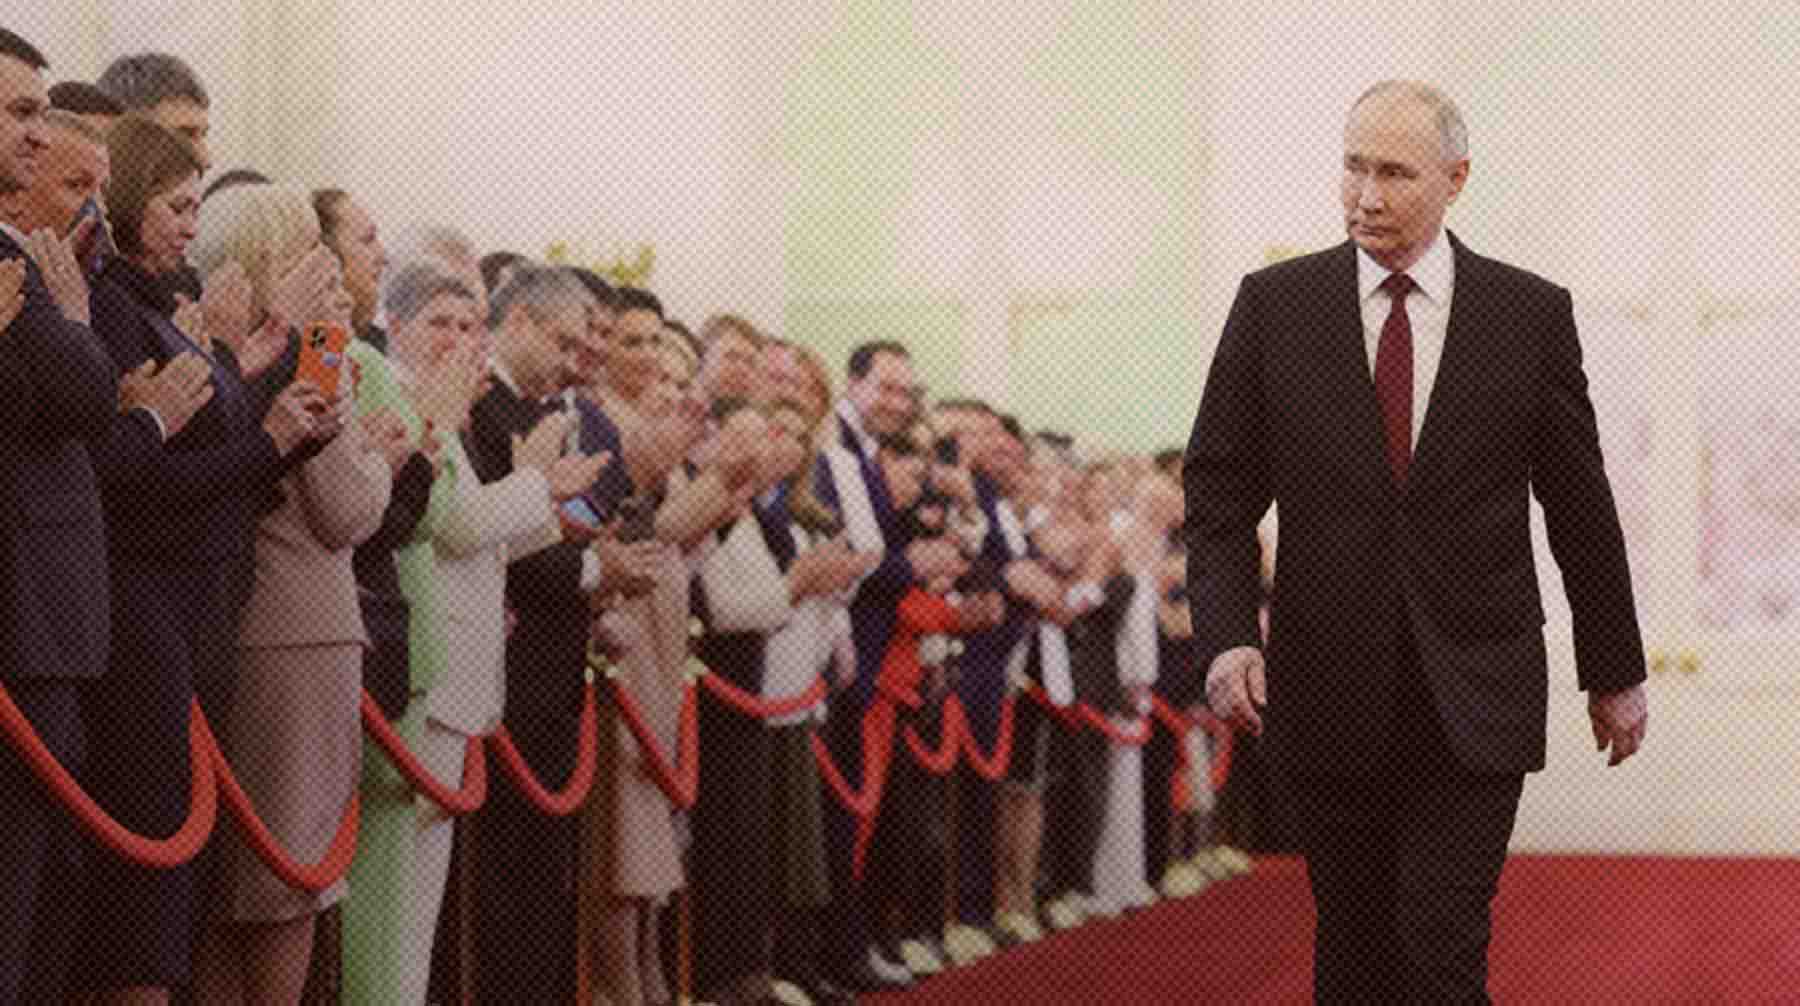 Dailystorm - Езда на новом Aurus, присяга и слова благодарности героям СВО: как прошла инаугурация Путина в Кремле